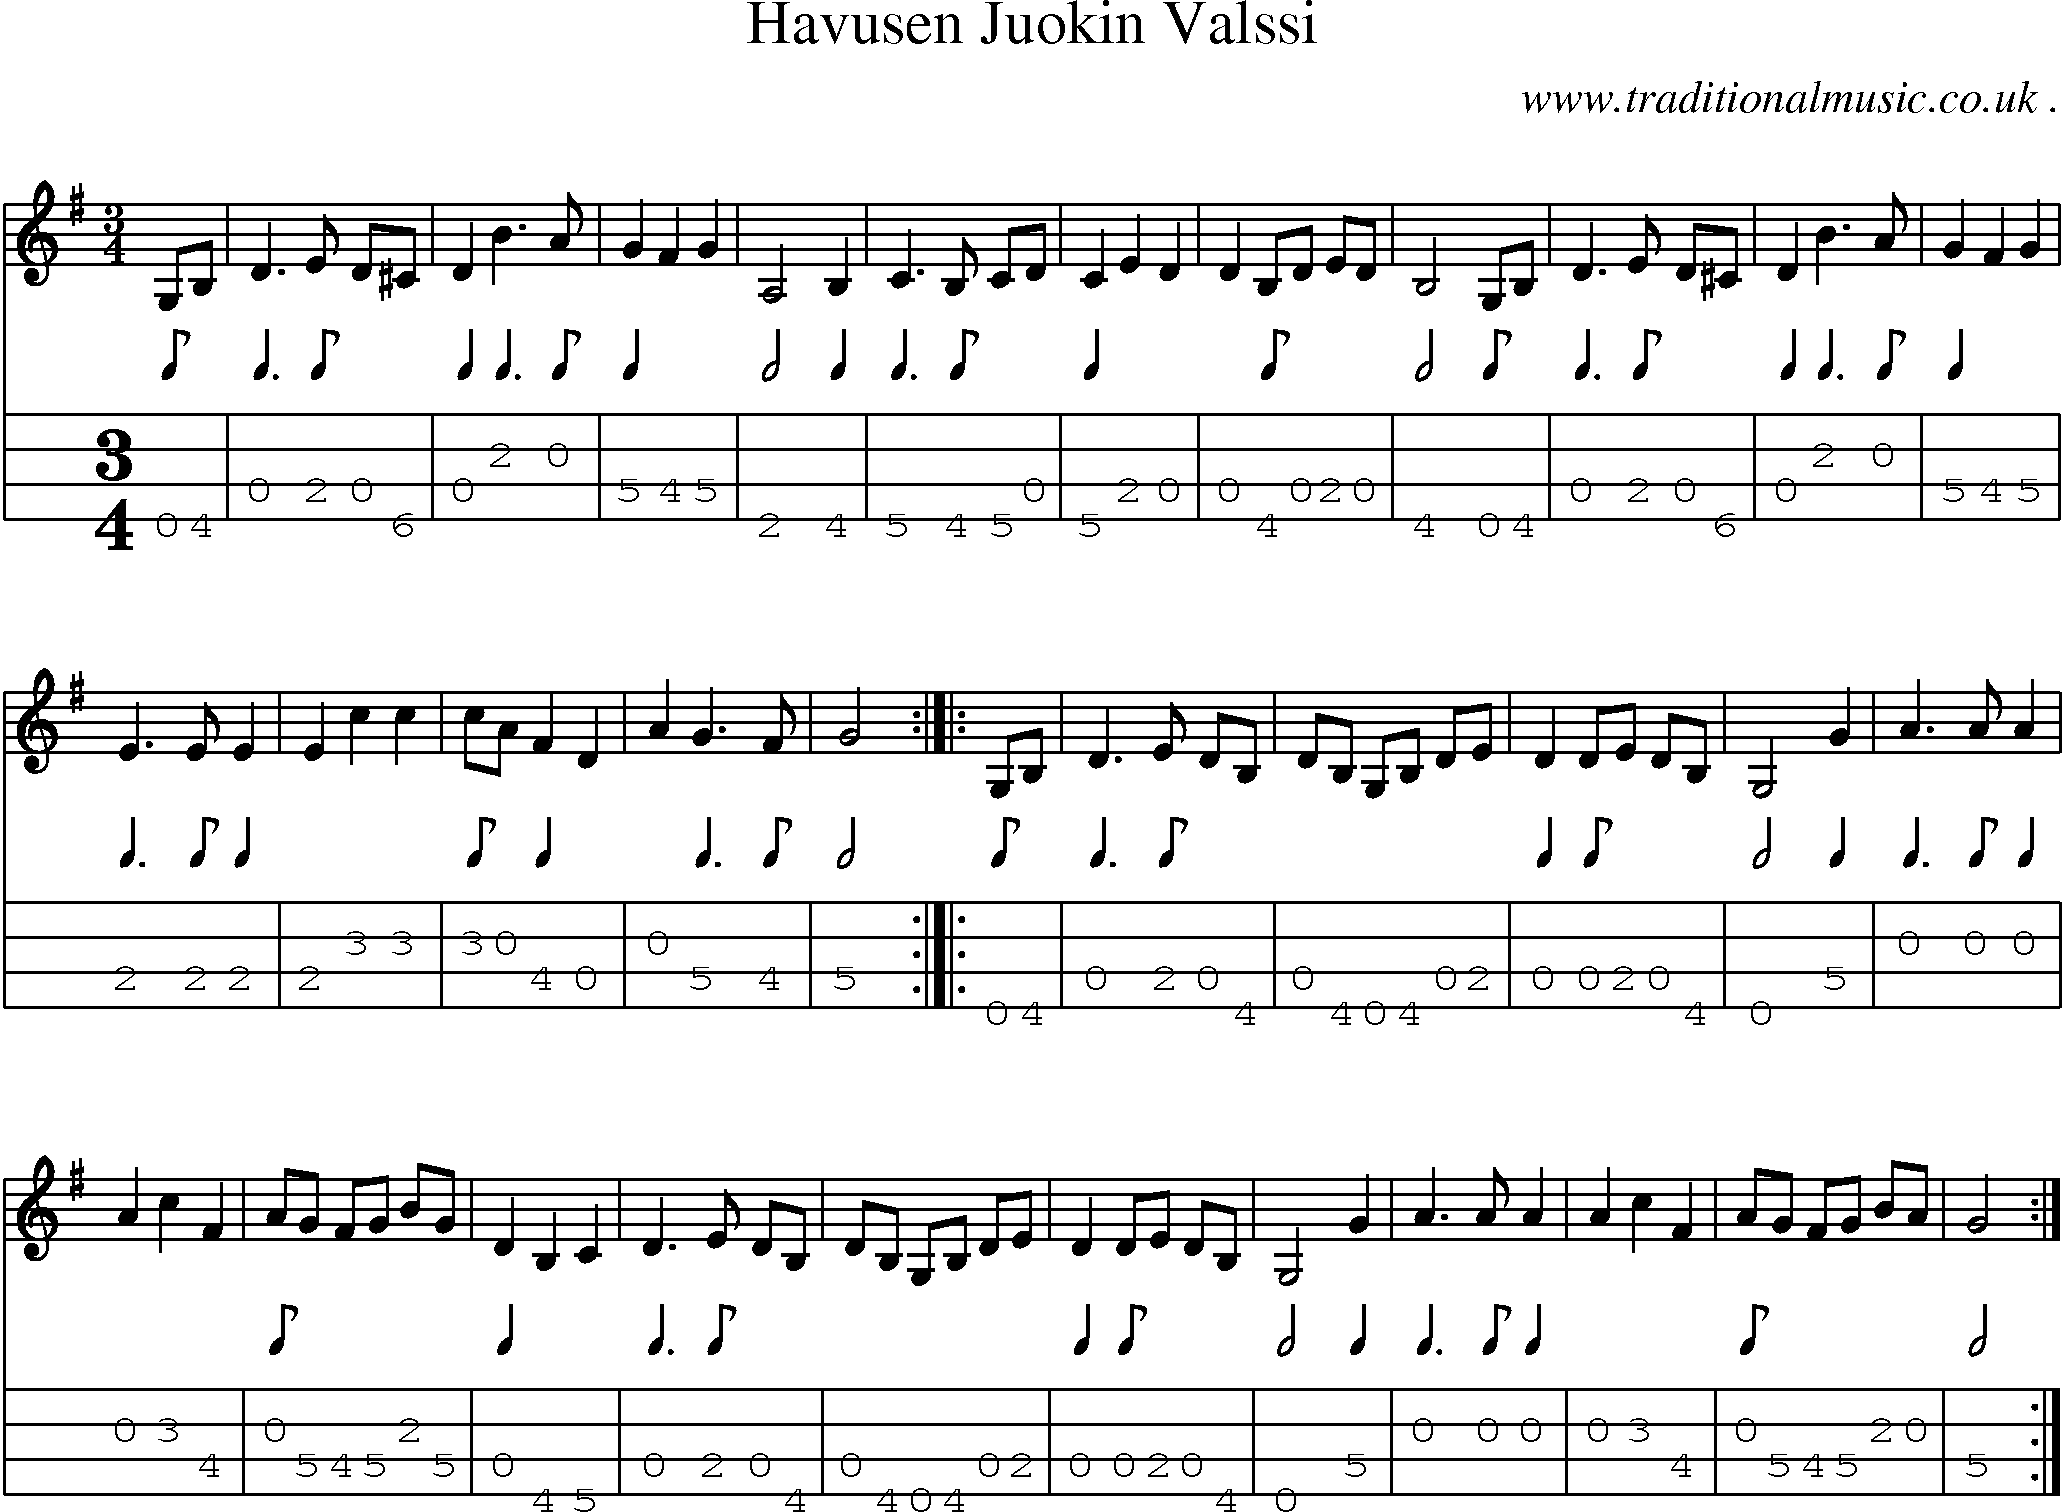 Sheet-Music and Mandolin Tabs for Havusen Juokin Valssi